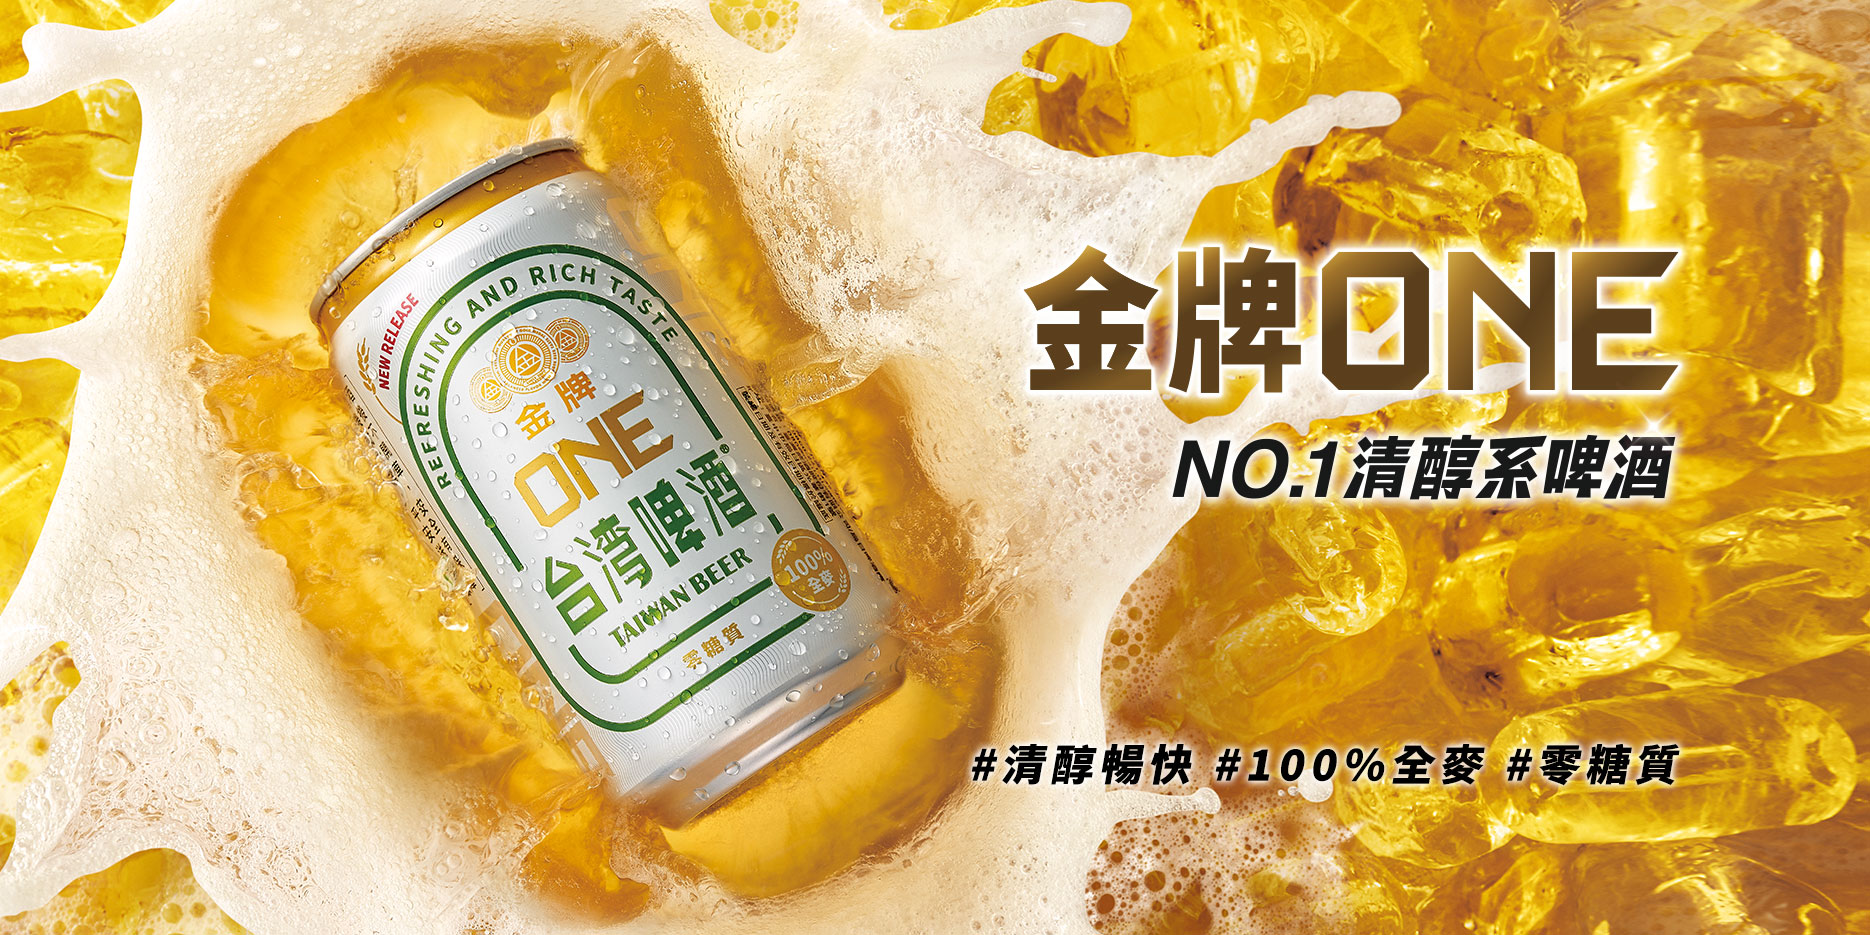 金牌One no.1清醇系啤酒